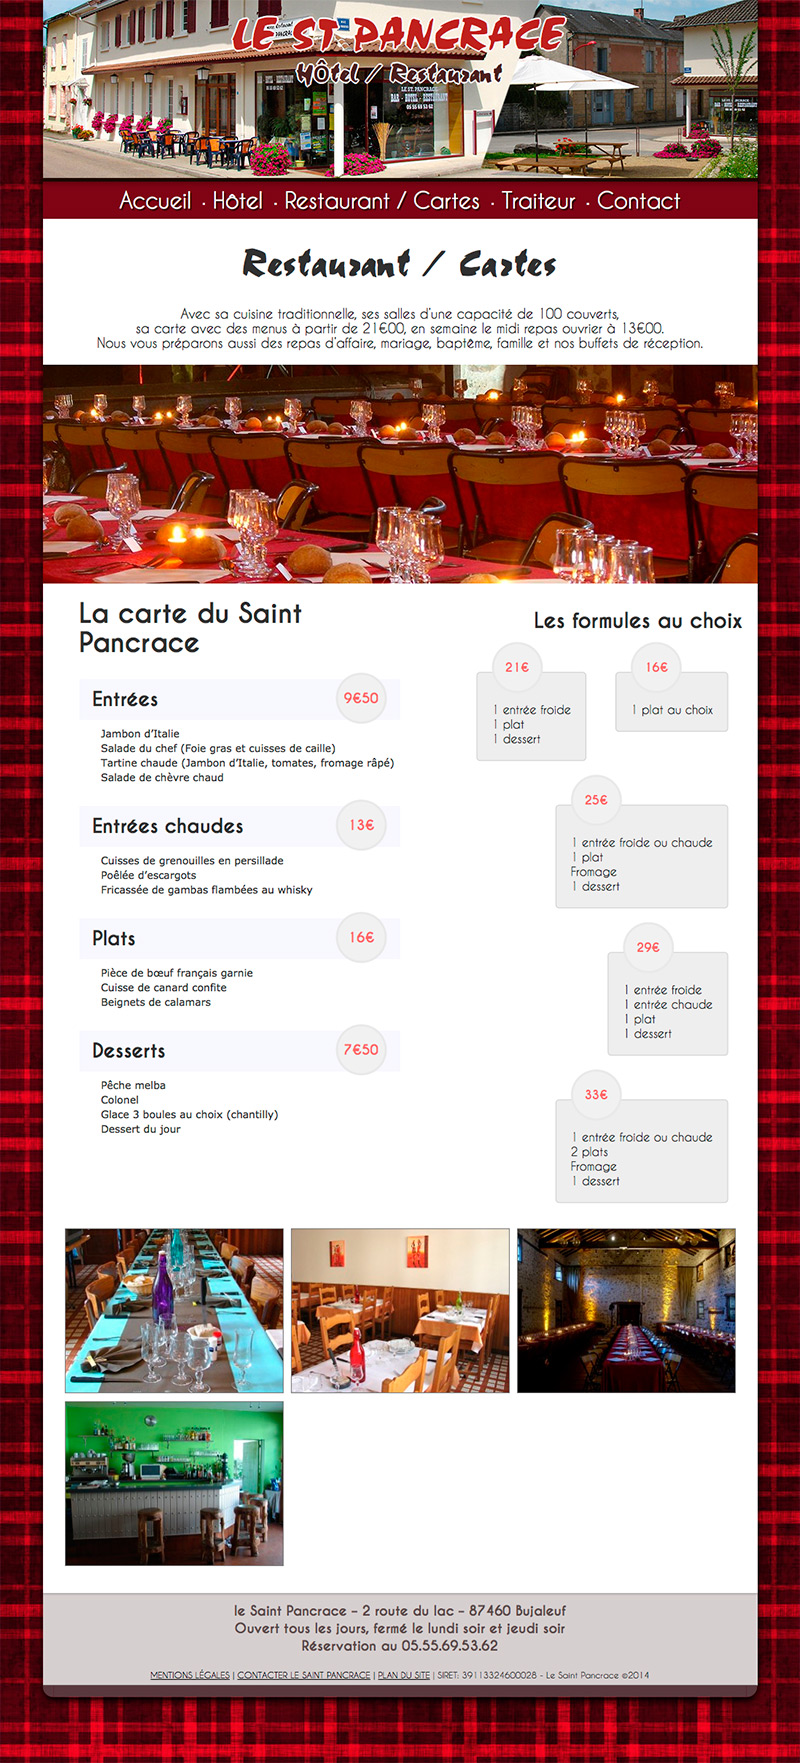 Le St Pancrace Hotel Restaurant Cartes